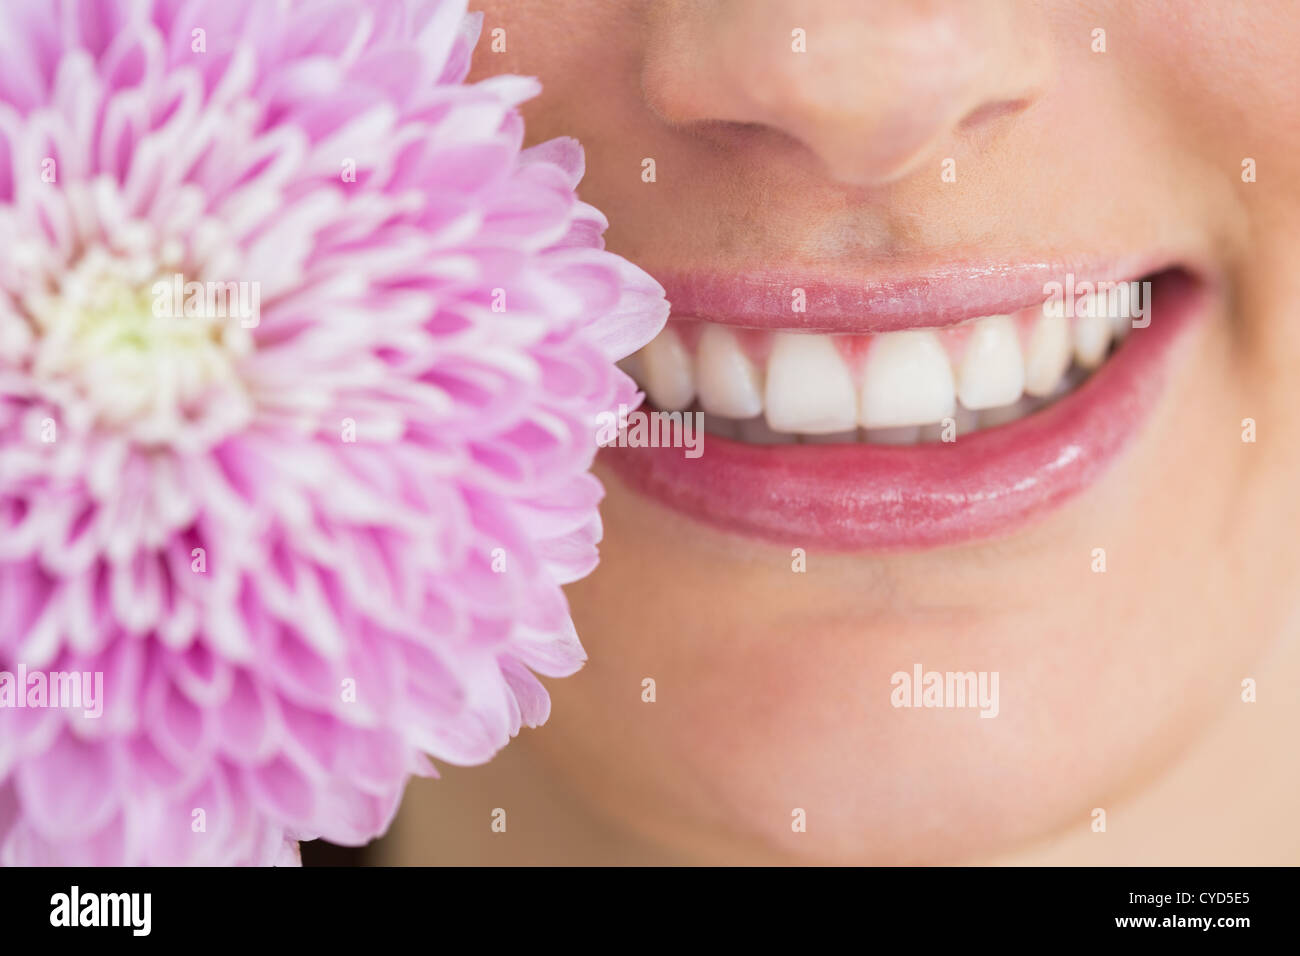 Woman with white smile Stock Photo